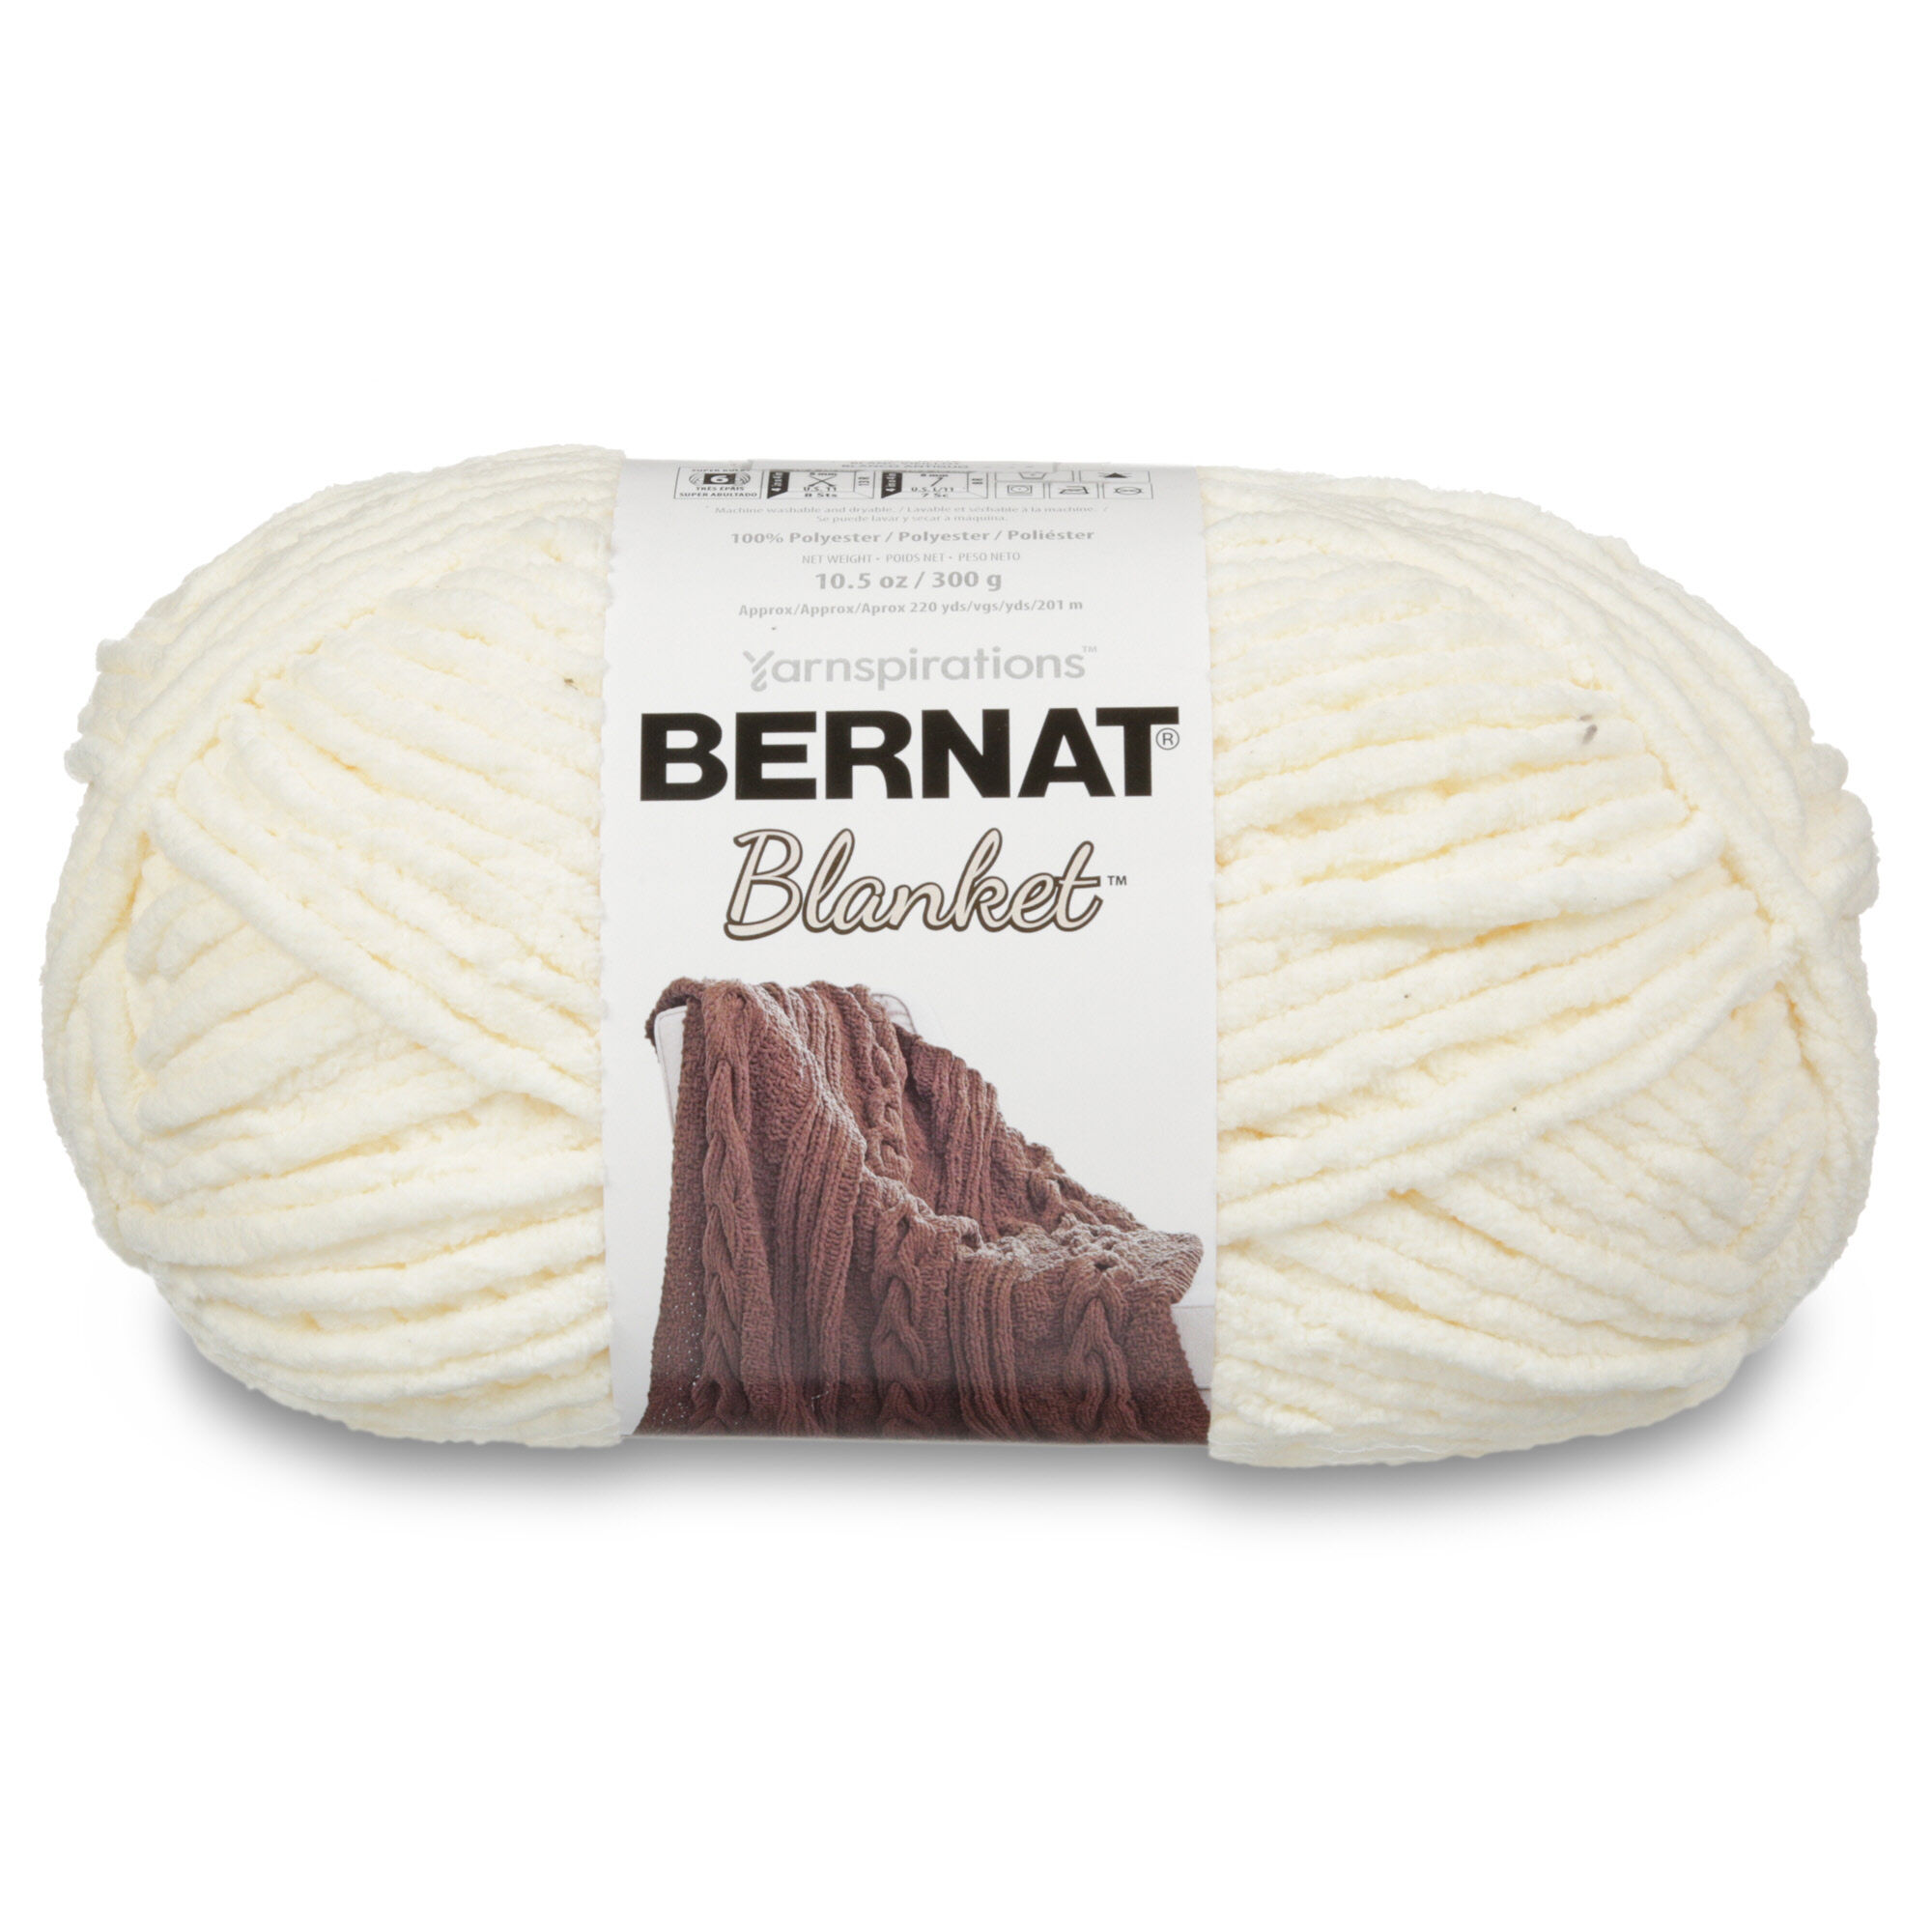 Bernat Blanket 6 Super Bulky Polyester Yarn, Sonoma 10.5oz/300g, 220 Yards